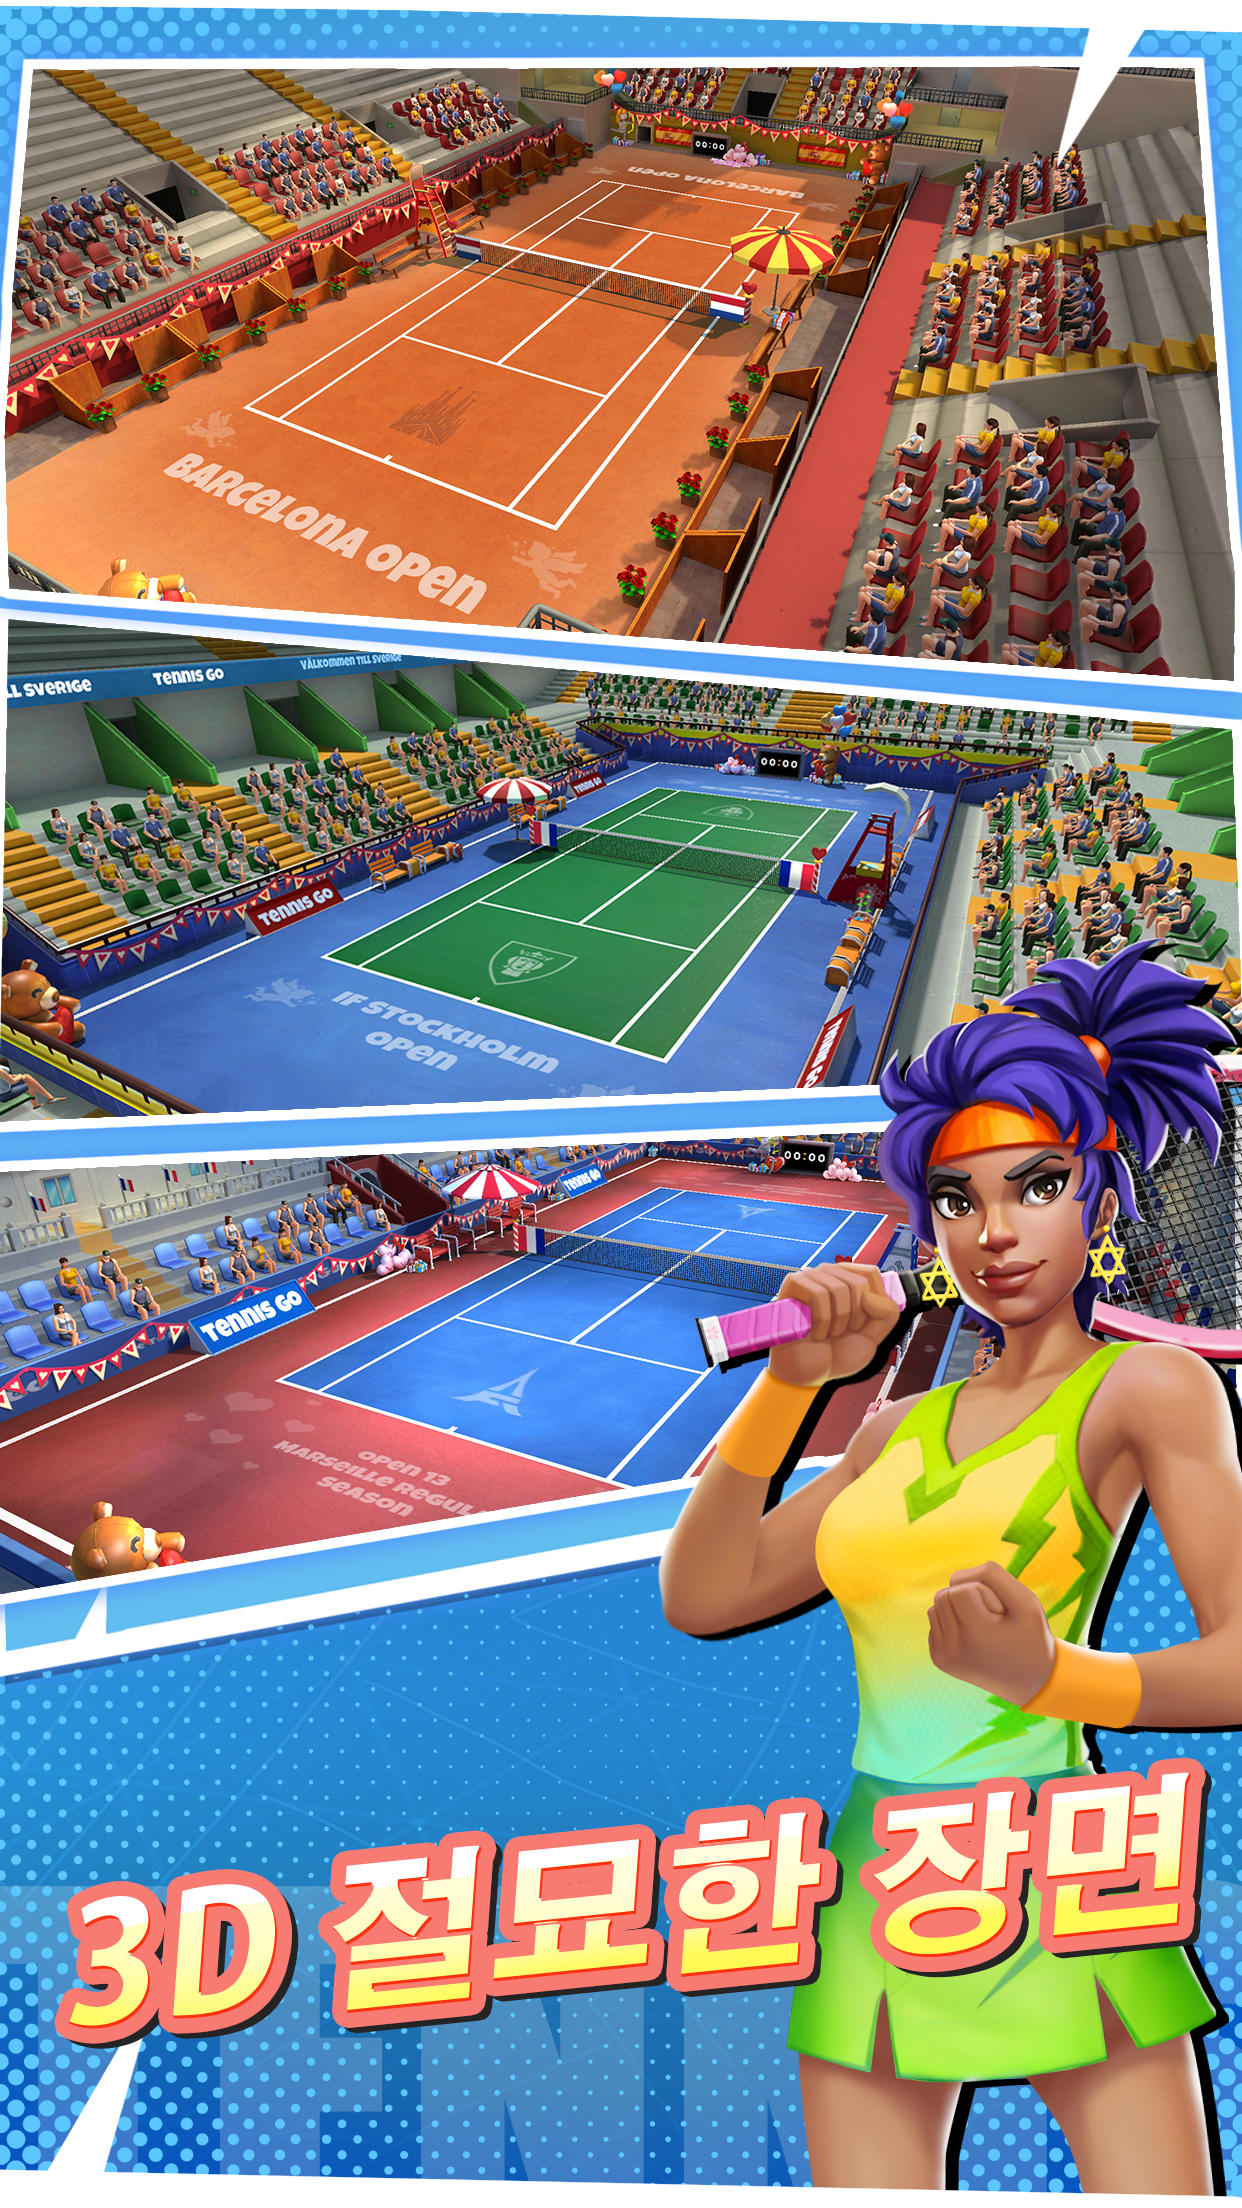 Tennis Go: World Tour 3D 게임 스크린 샷